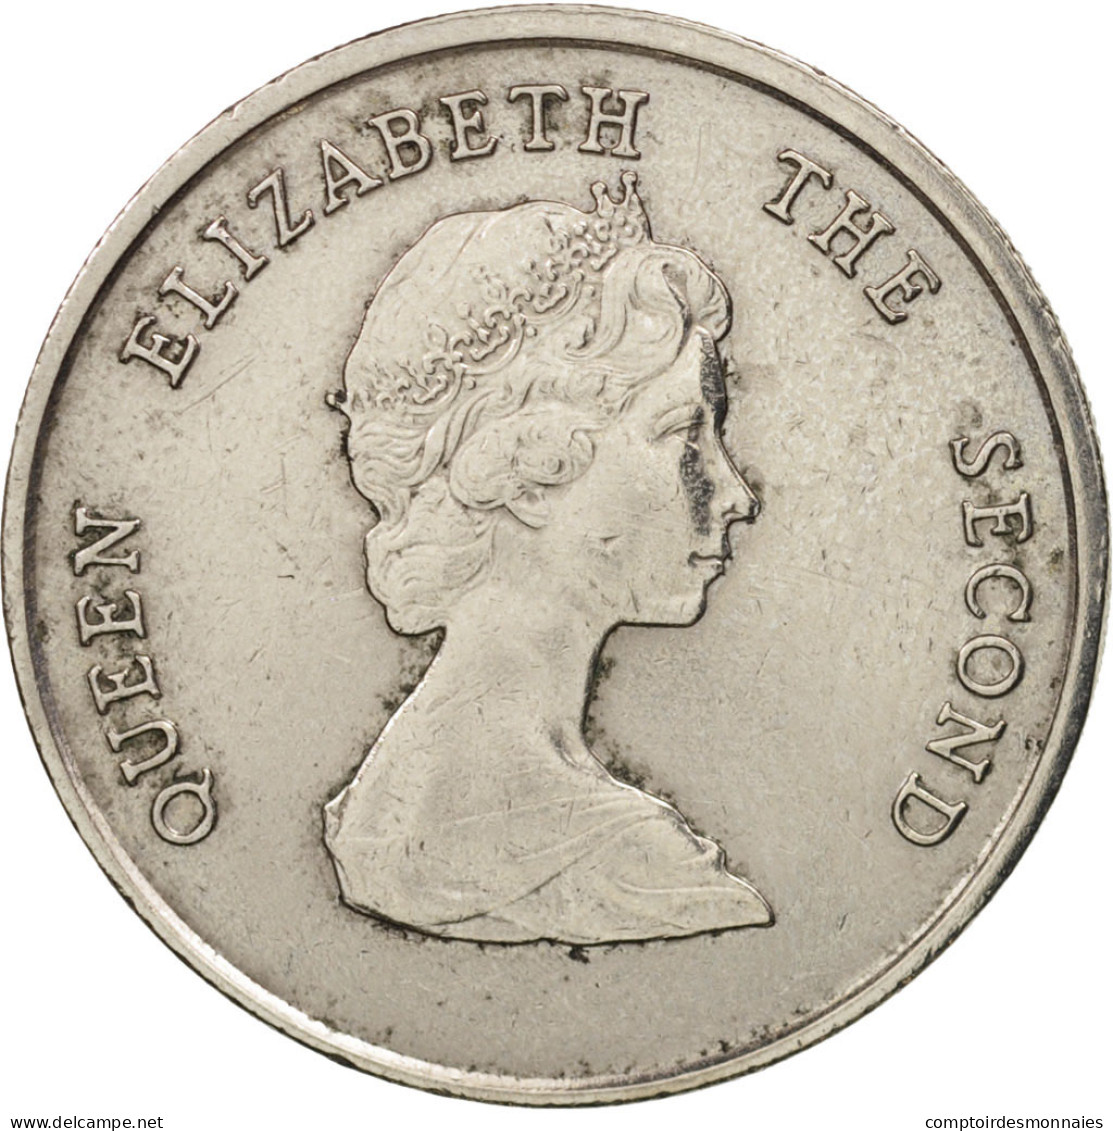 Monnaie, Etats Des Caraibes Orientales, Elizabeth II, 25 Cents, 1989, TTB+ - Caraïbes Orientales (Etats Des)